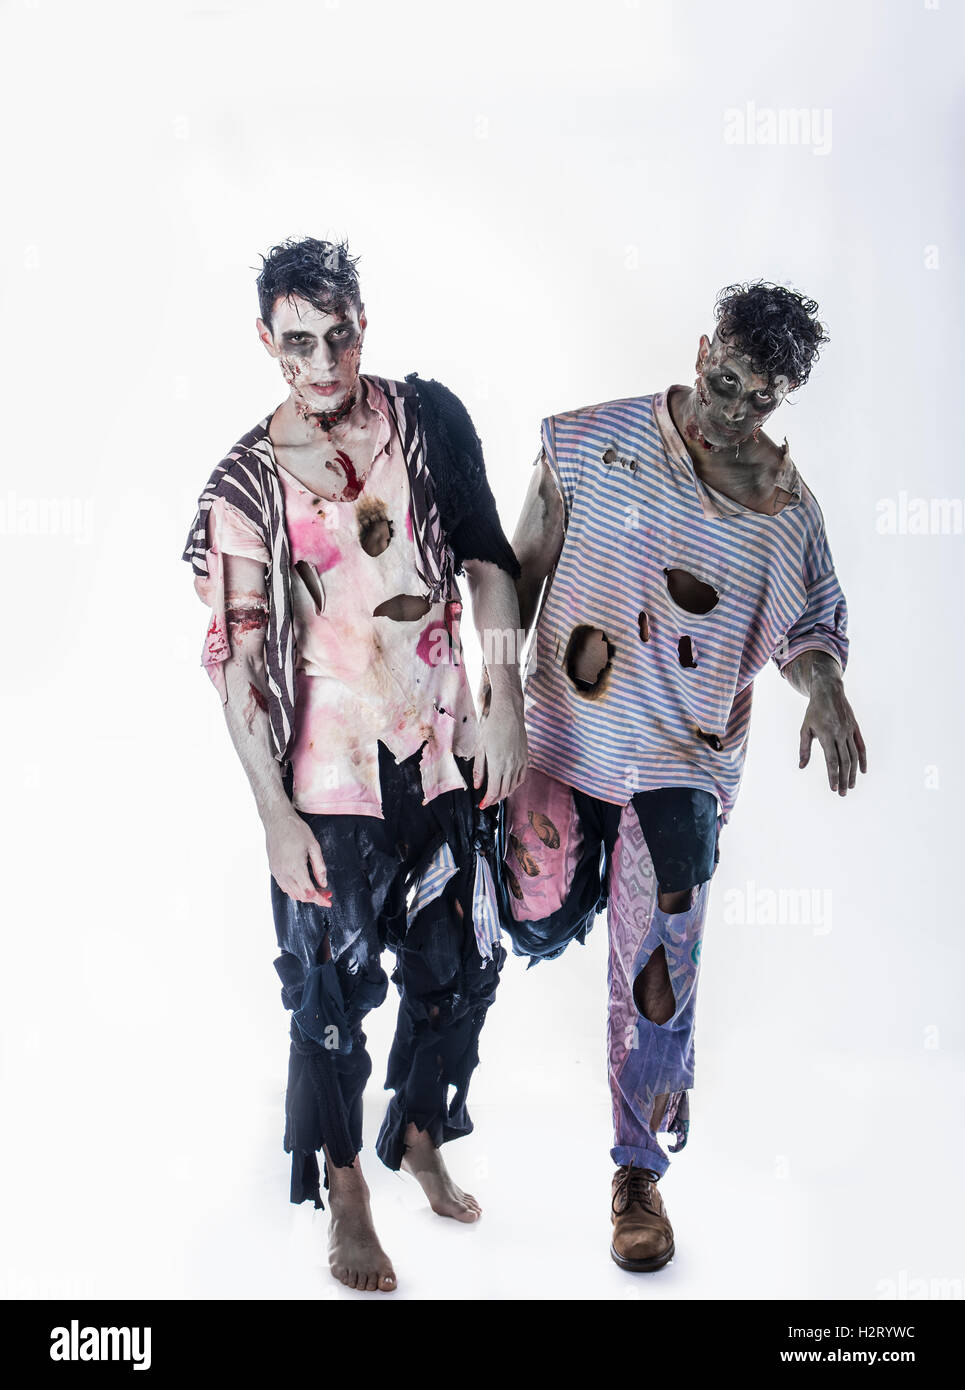 Zwei männliche Zombies auf schwarzem Hintergrund zu Fuß in Richtung Kamera stehend Stockfoto